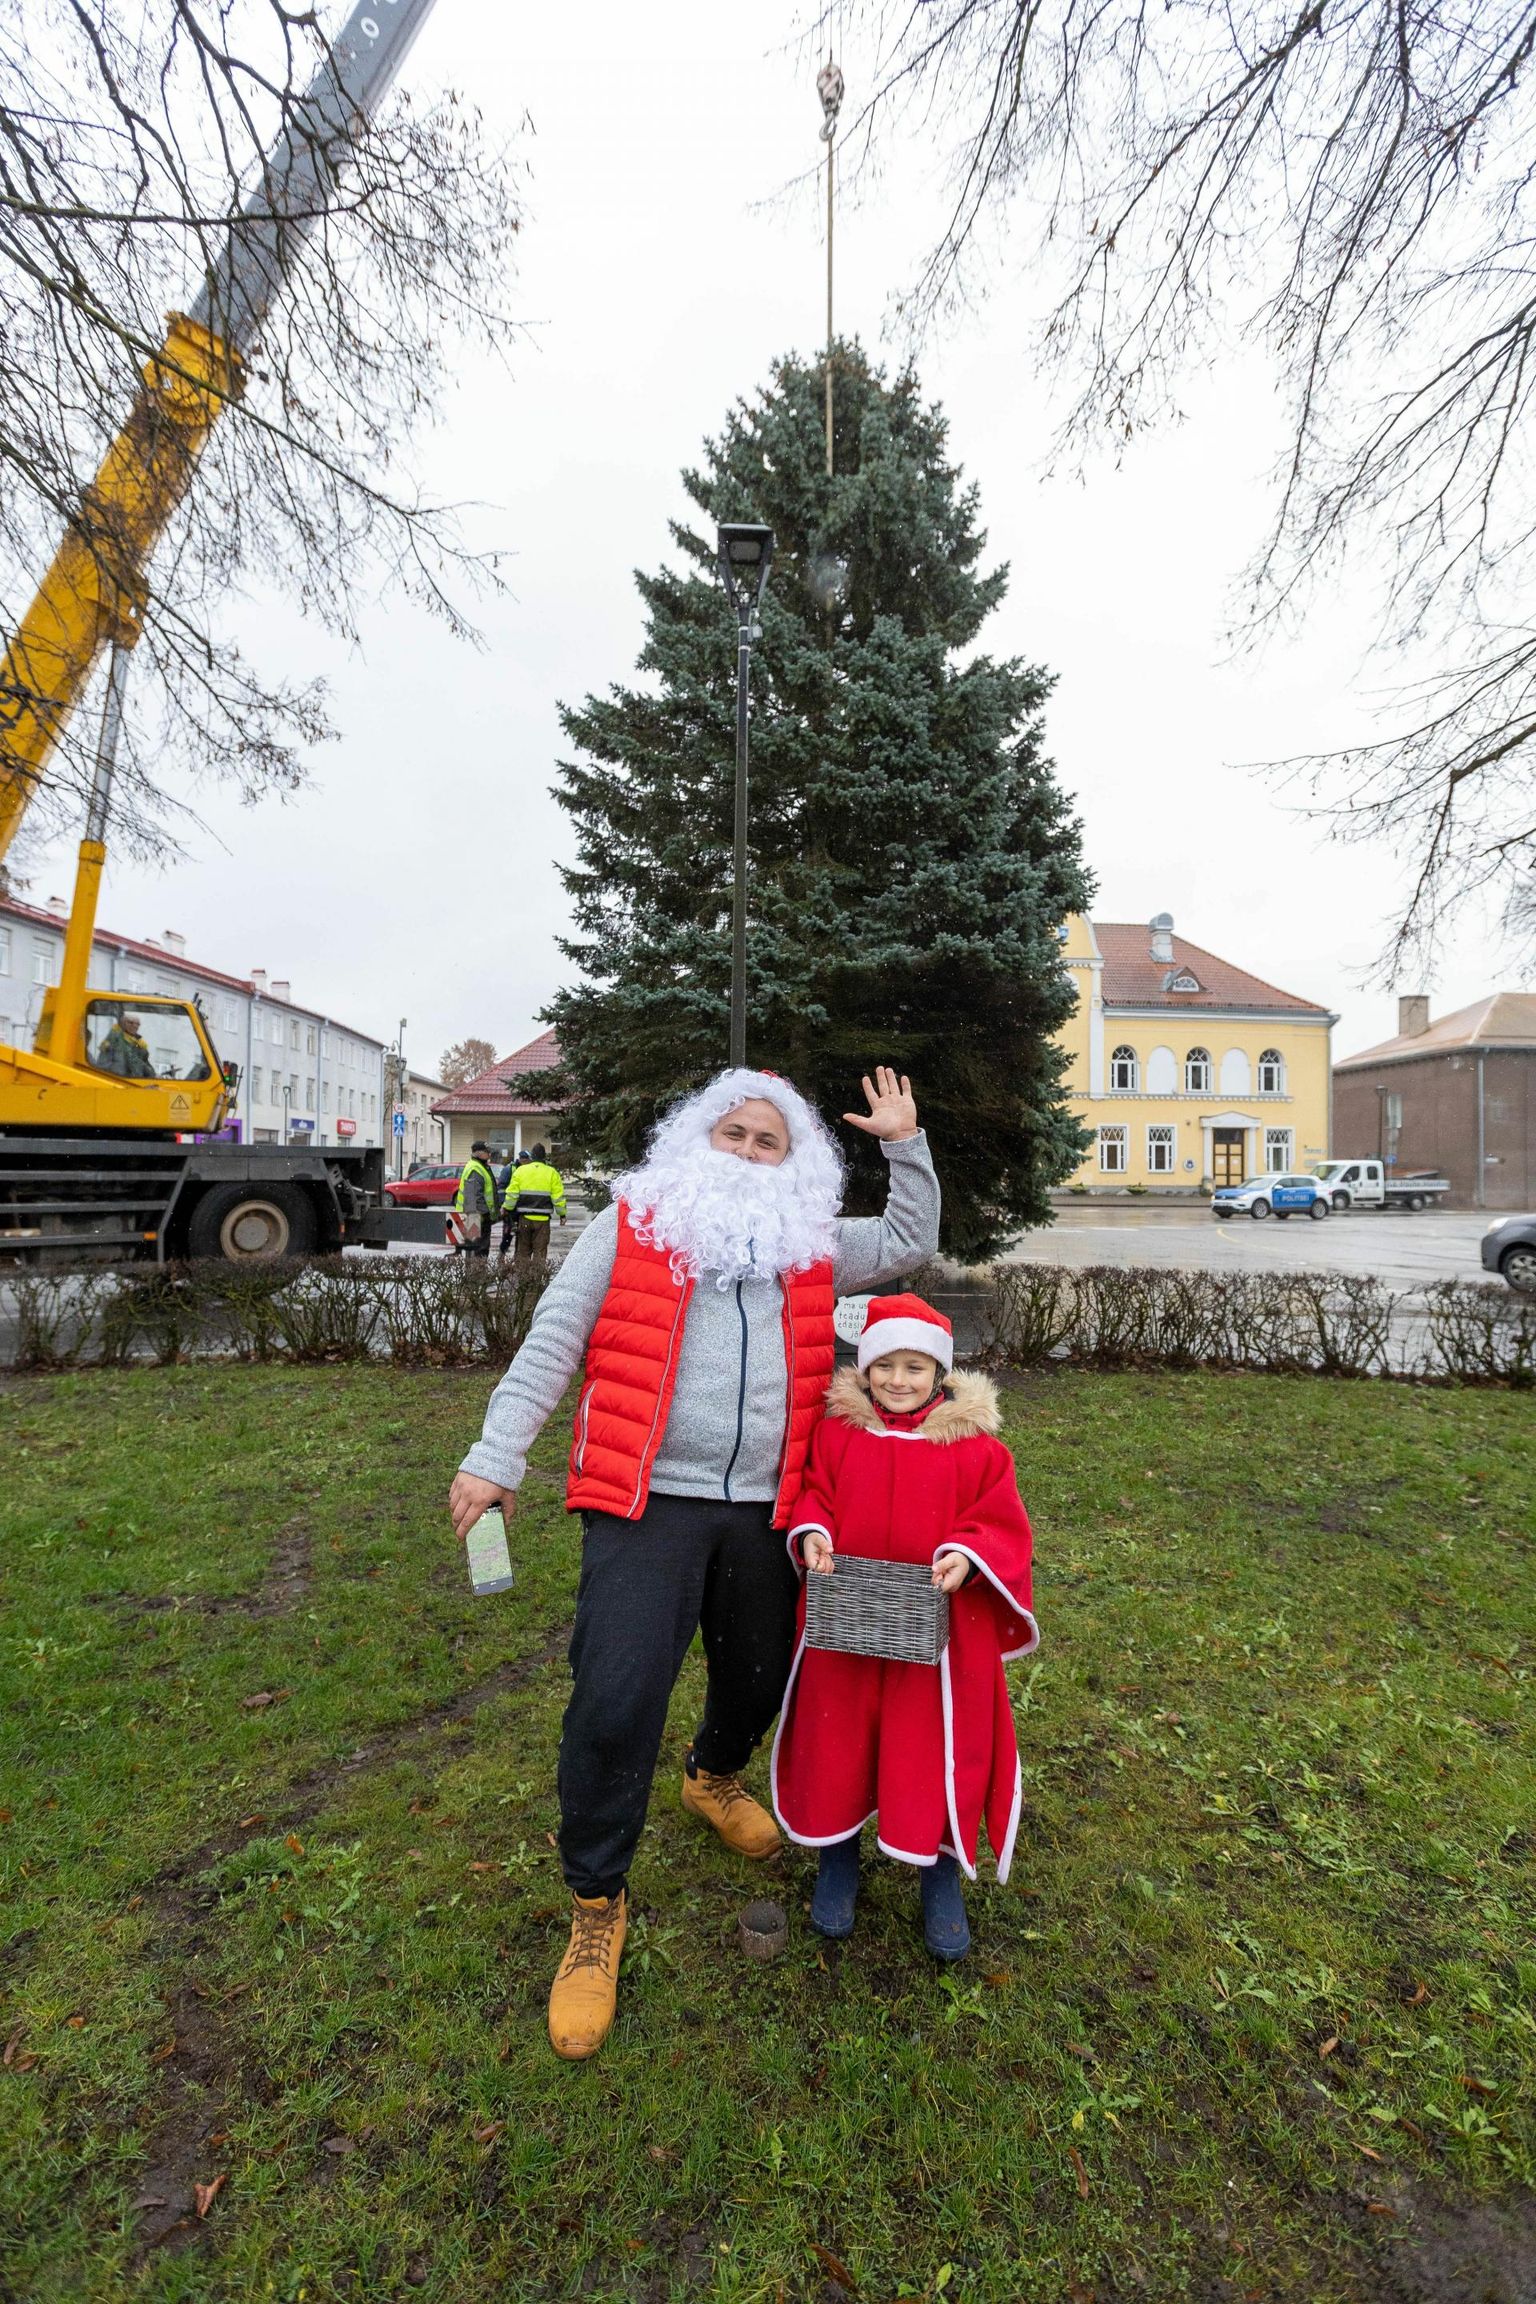 Risto (vasakul) ja Joosep Hinn tõid Paide keskväljakule jõulupuu teist aastat. Nad tõmbasid selleks puhuks selga jõuluvana ja päkapiku rüü, et luua jõulumeeleolu ja näidata, kui toreda tavaga on tegemist.